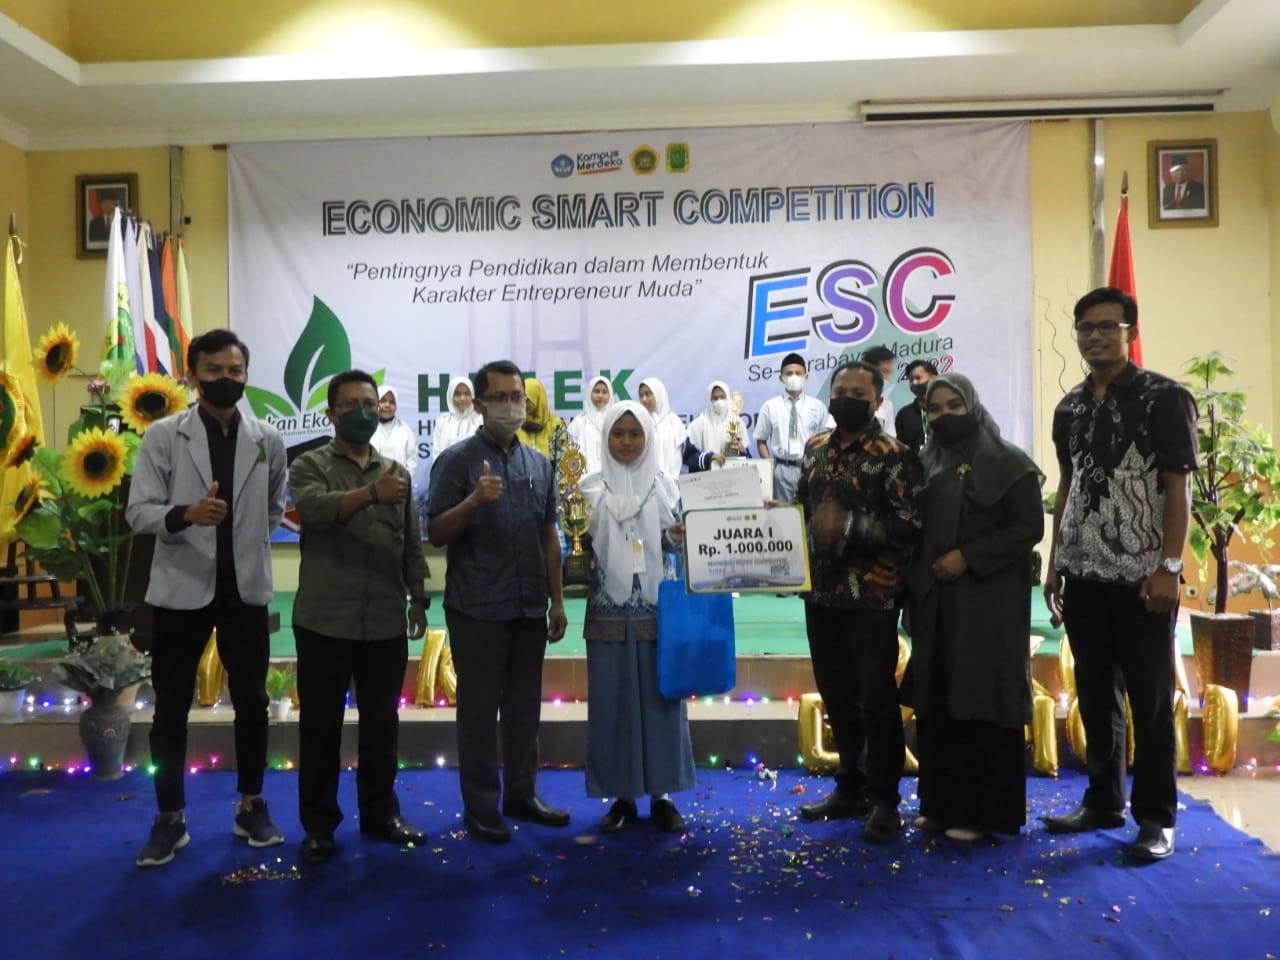 Rayakan Pekan Ekonomi, HIMEK STKIP PGRI Bangkalan Gelar Kompetisi bagi Pelajar